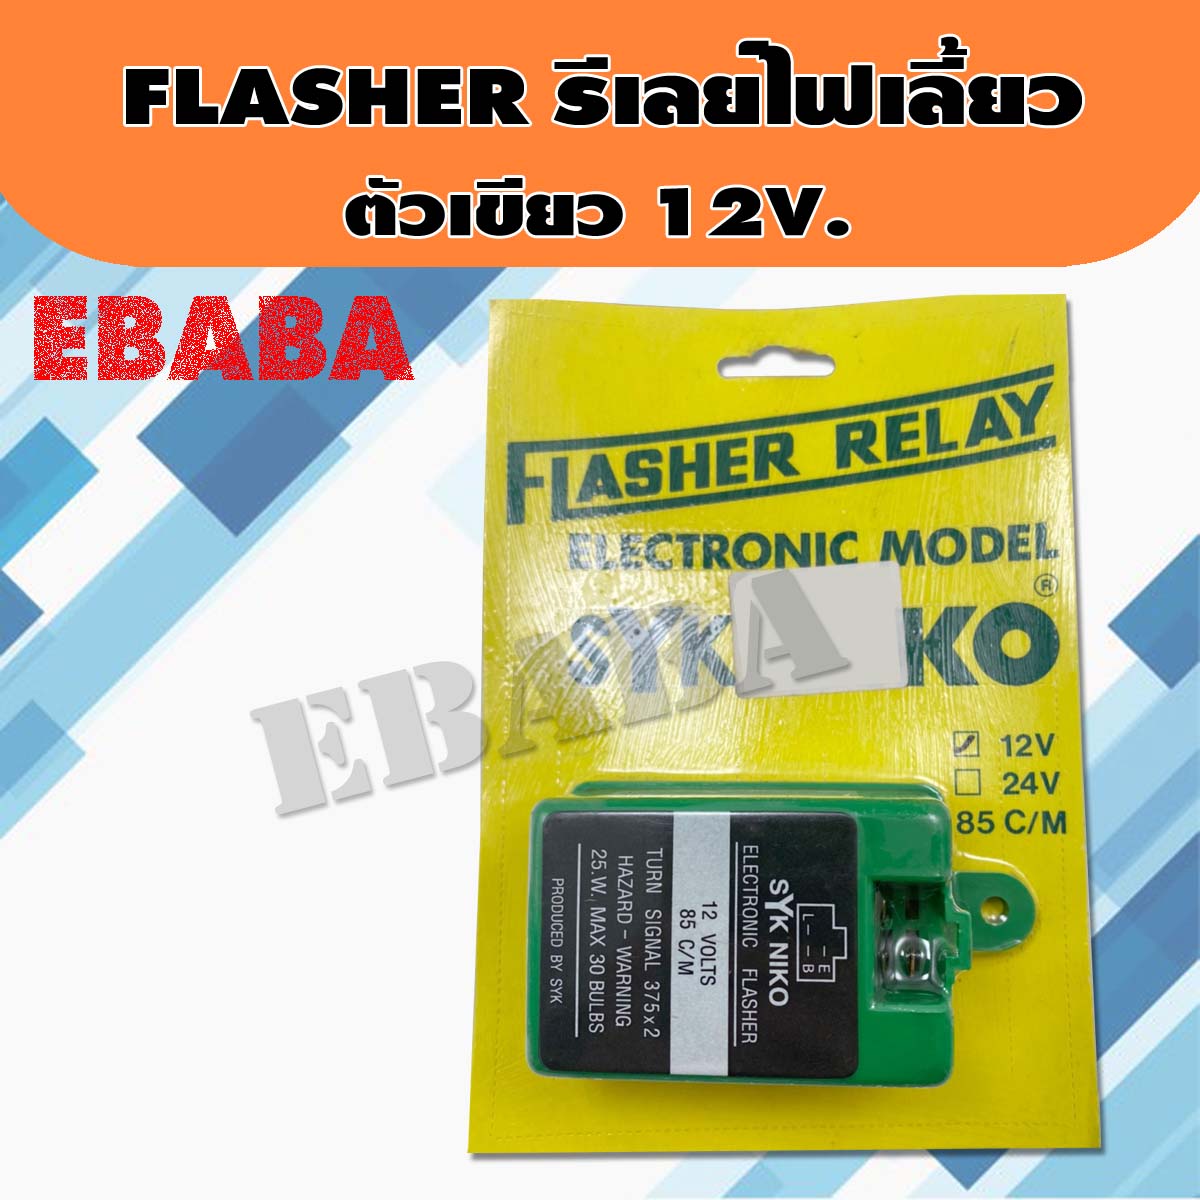 Flasher ไฟเลี้ยว (แฟลชเชอร์ / รีเลย์ไฟเลี้ยว) ตัวเขียว 12V. มีฟิวส์ตัดการช็อต